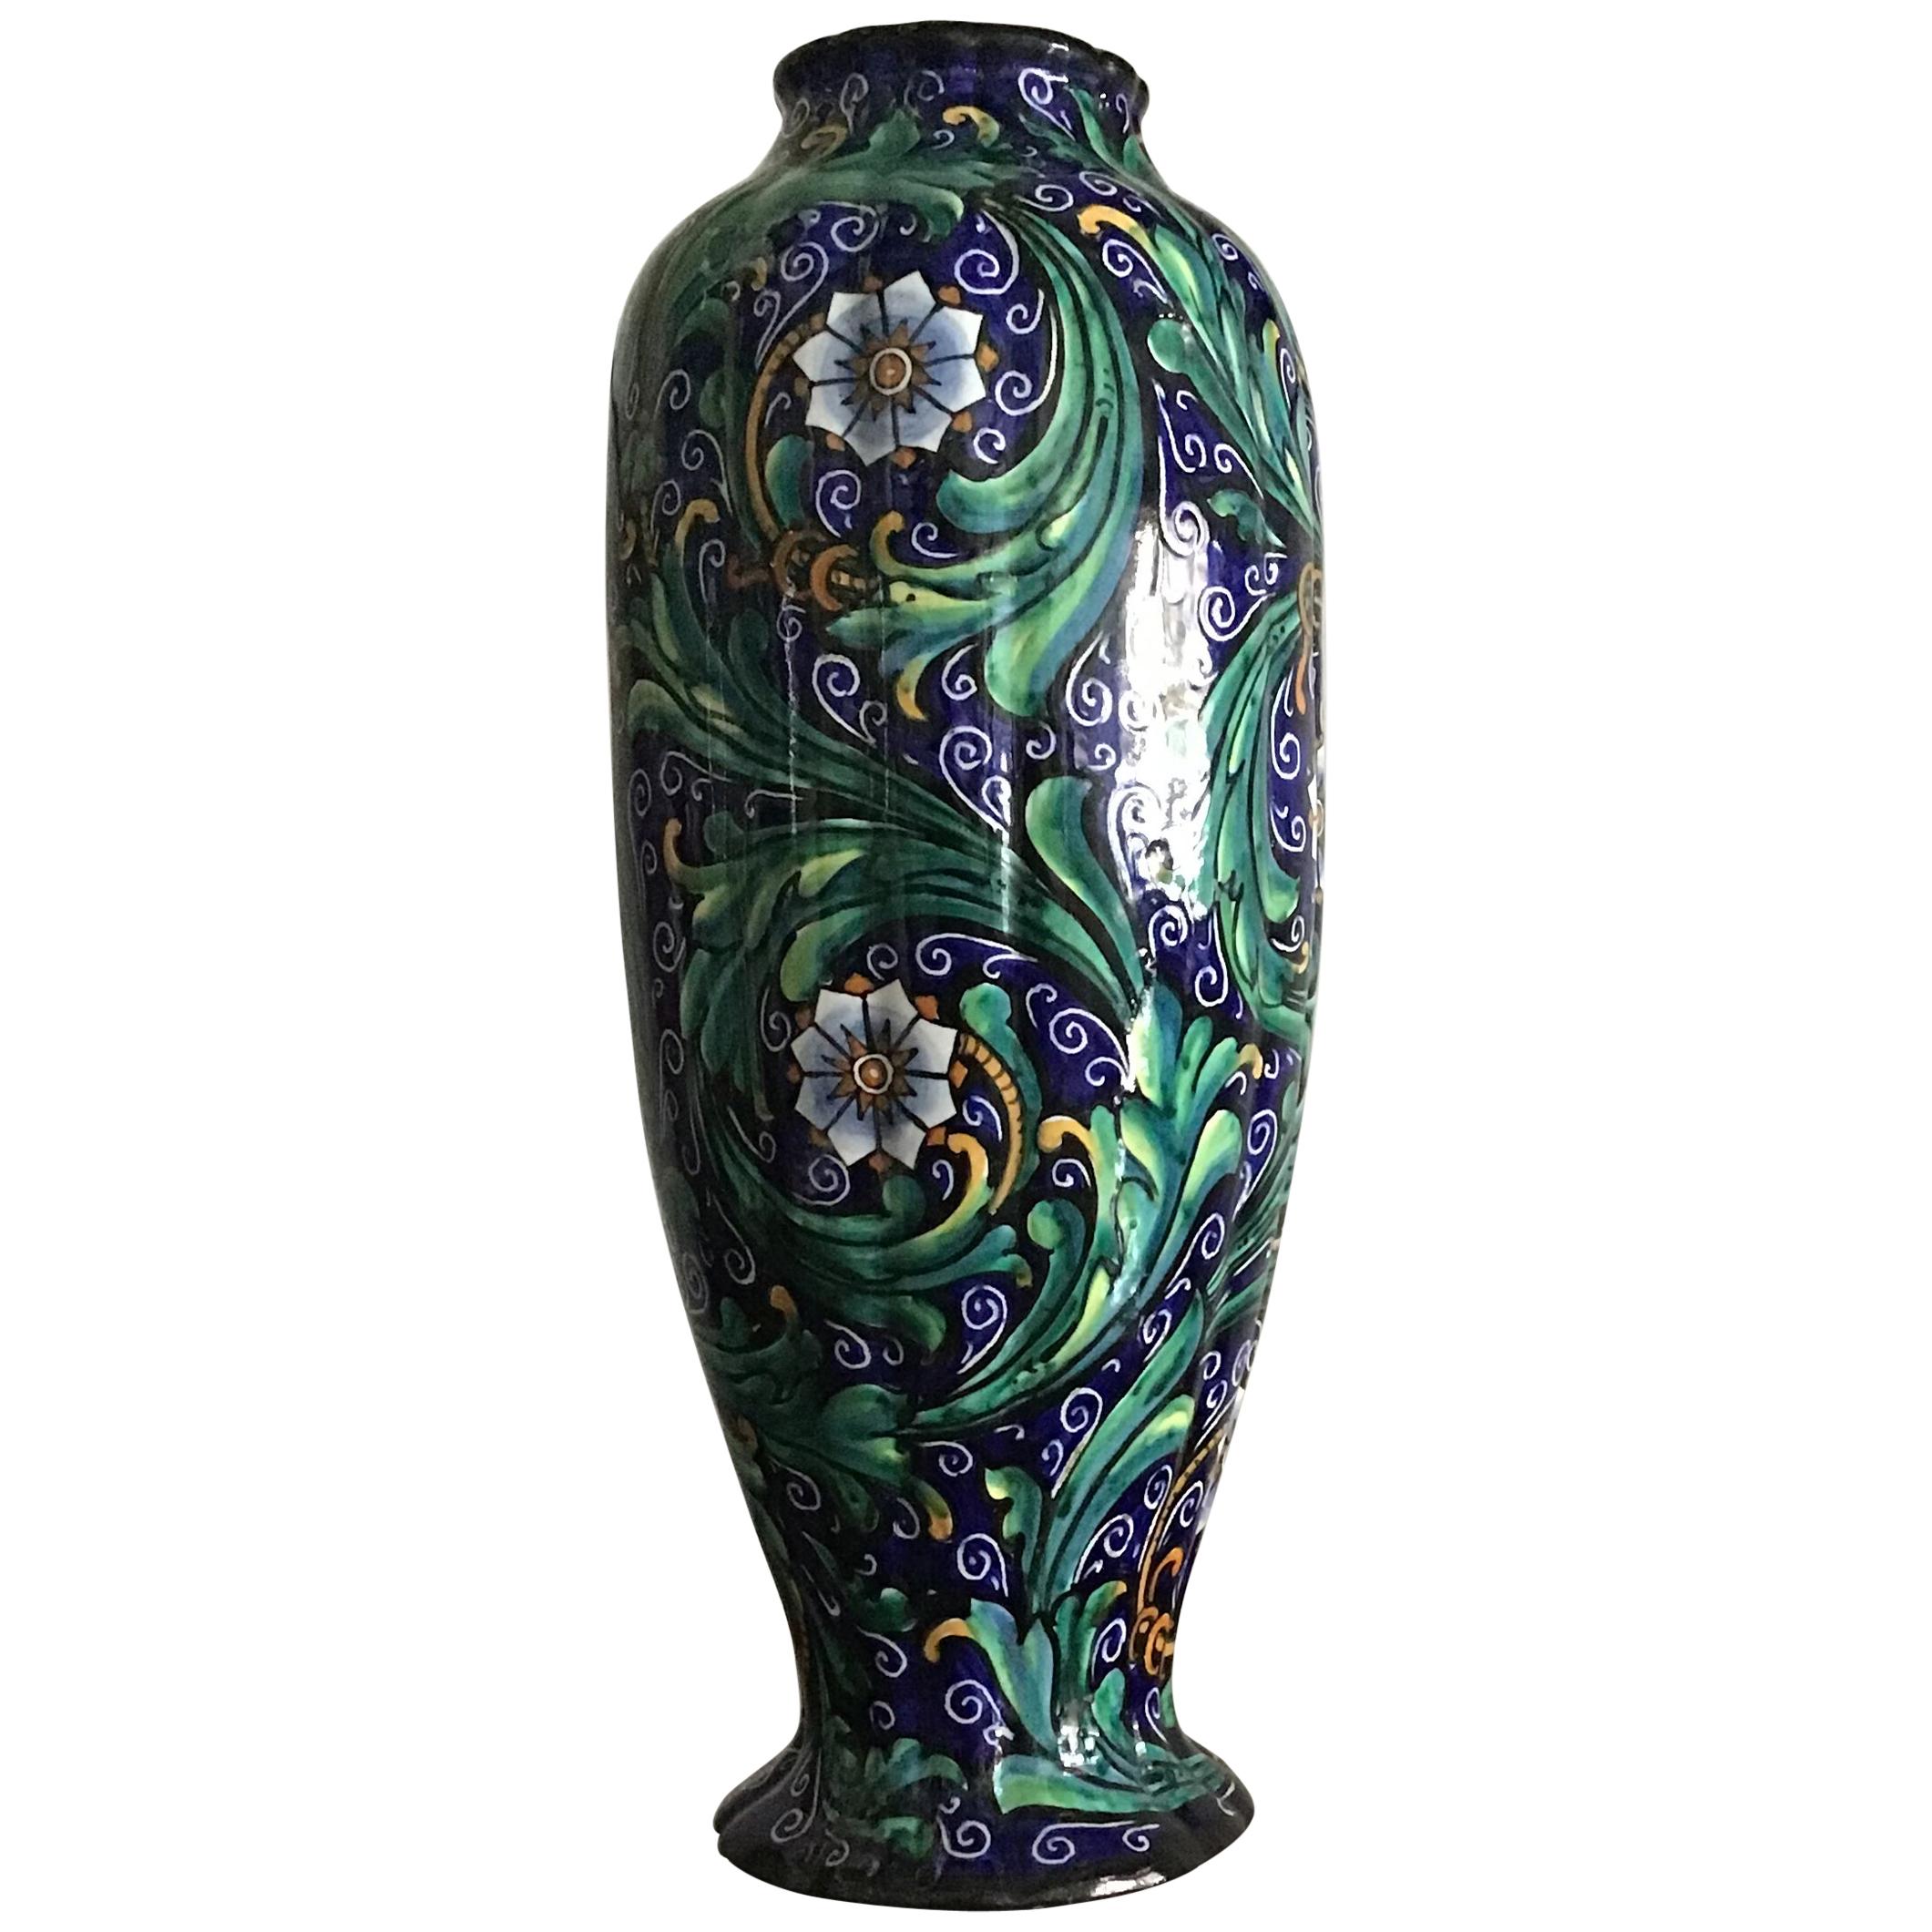 Ferruccio Mengaroni Vase Ceramic 1940 Italy For Sale